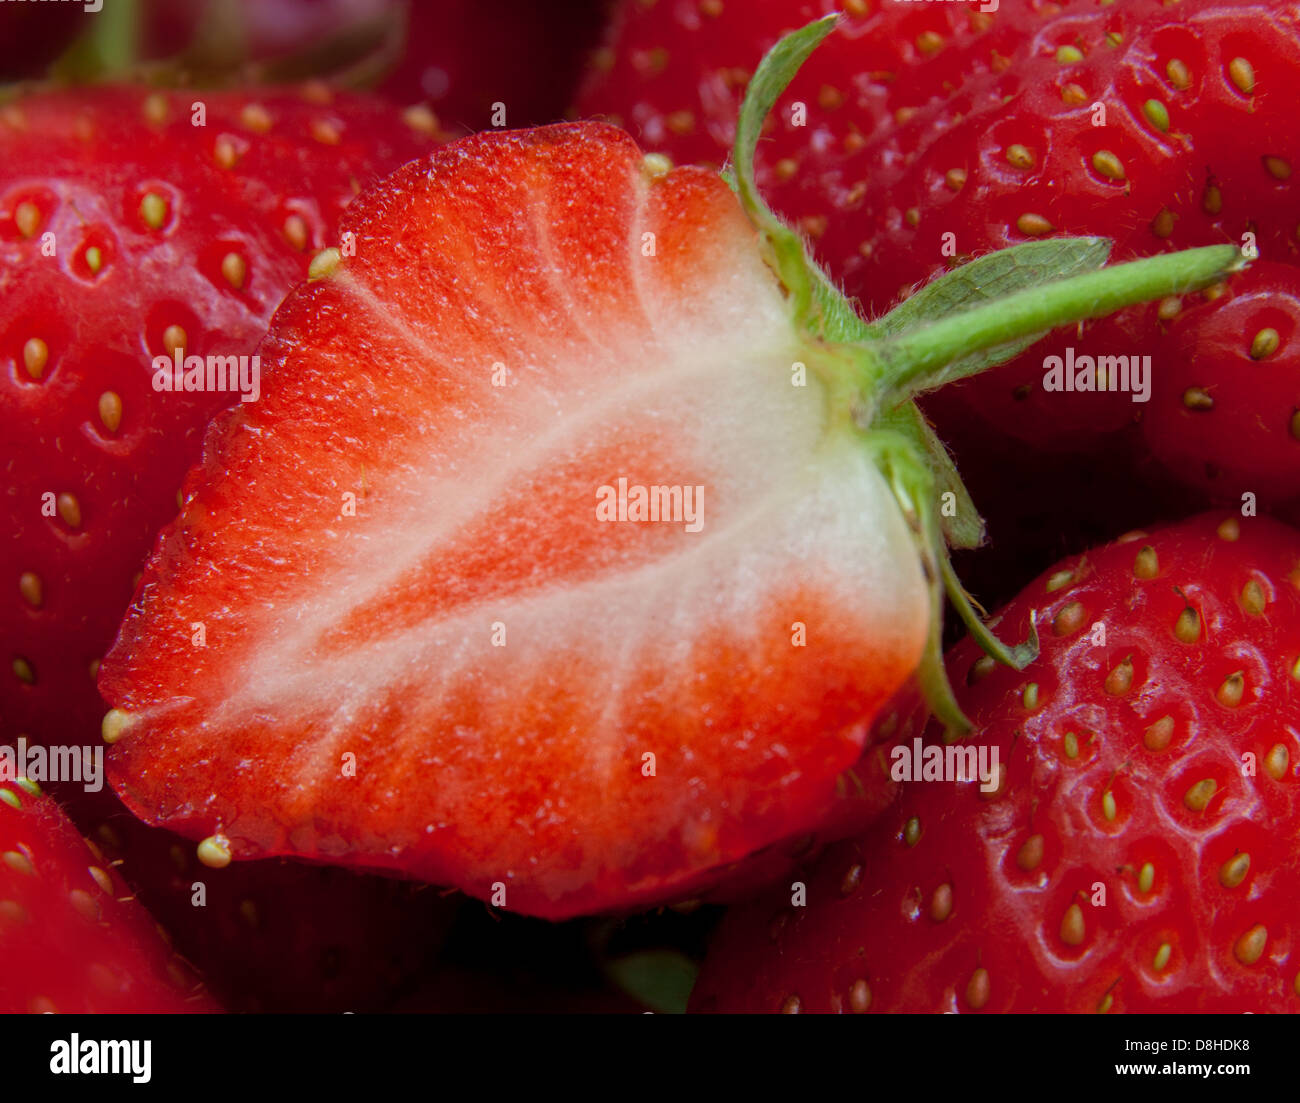 Die britischen Erdbeeren sind so eine brillante rote Sommerfrucht! Nahaufnahme einer in zwei Hälften geschnittenen Frucht mit Samen Stockfoto